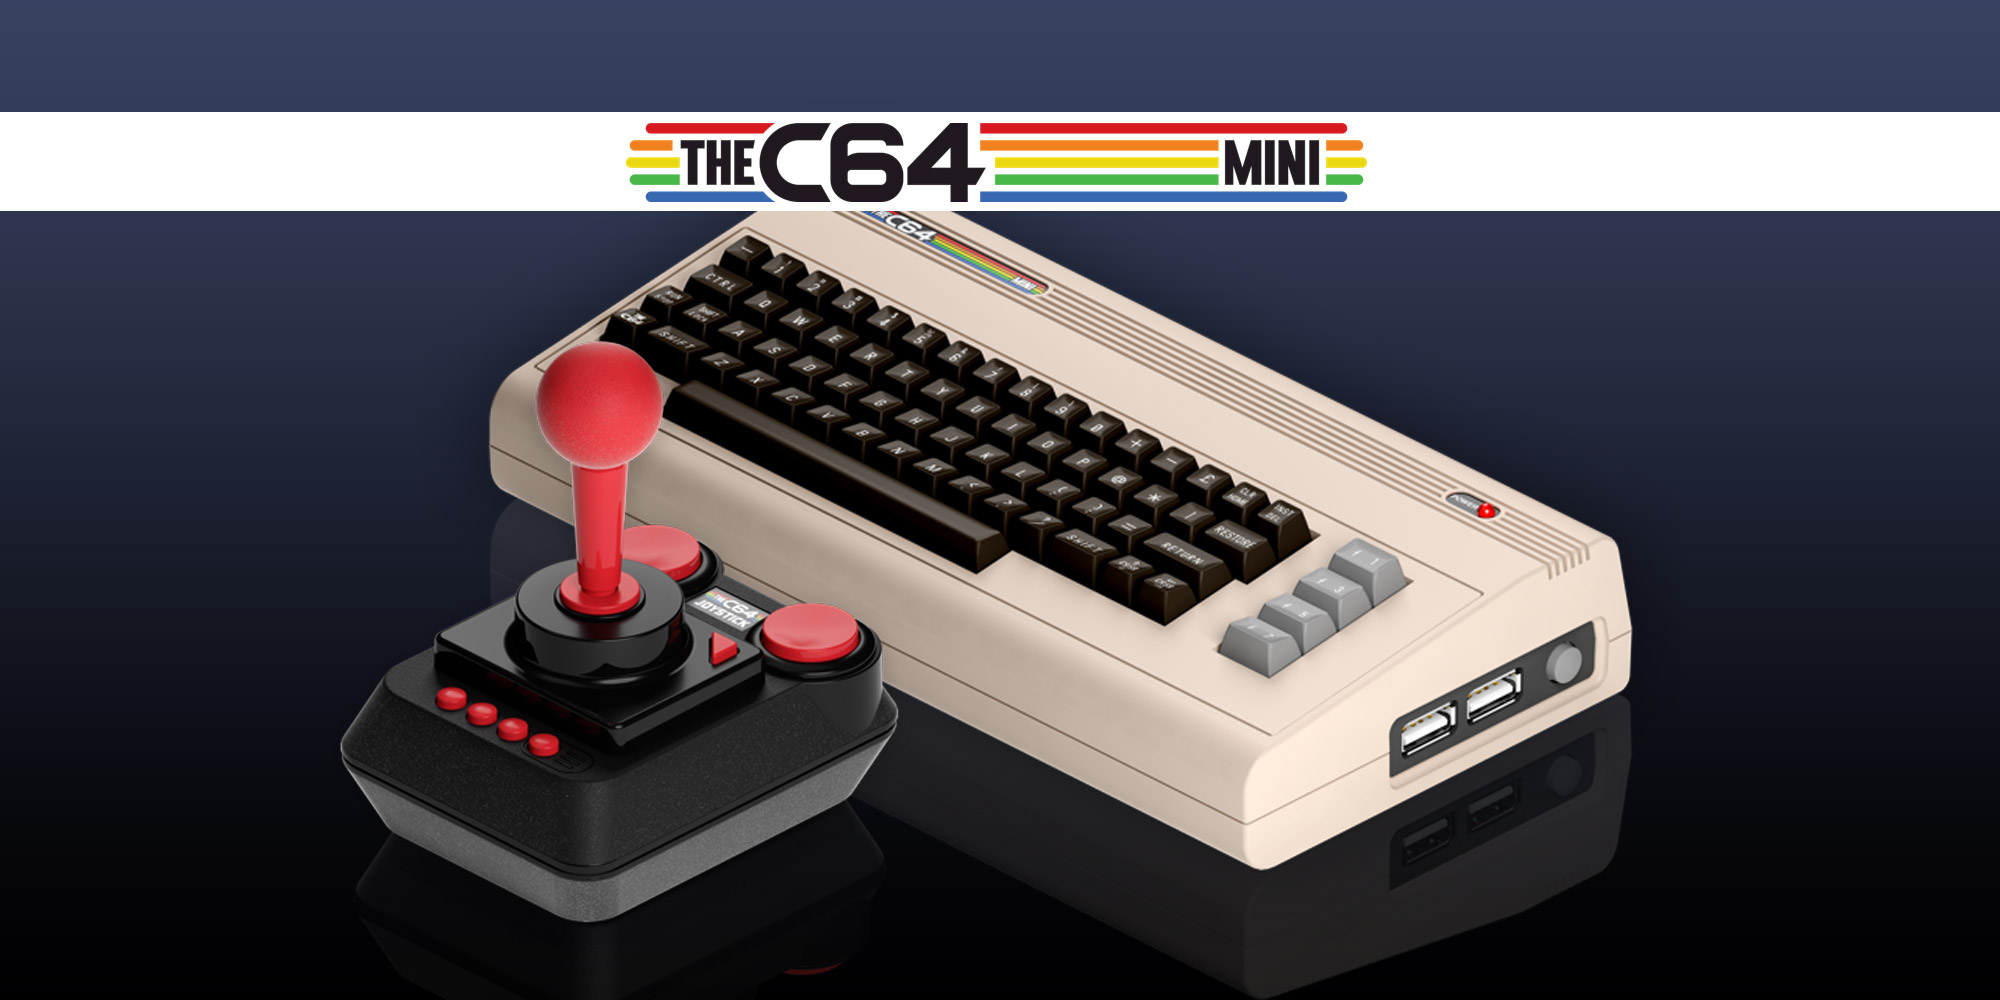  Et maintenant, le C64 Mini débarque !